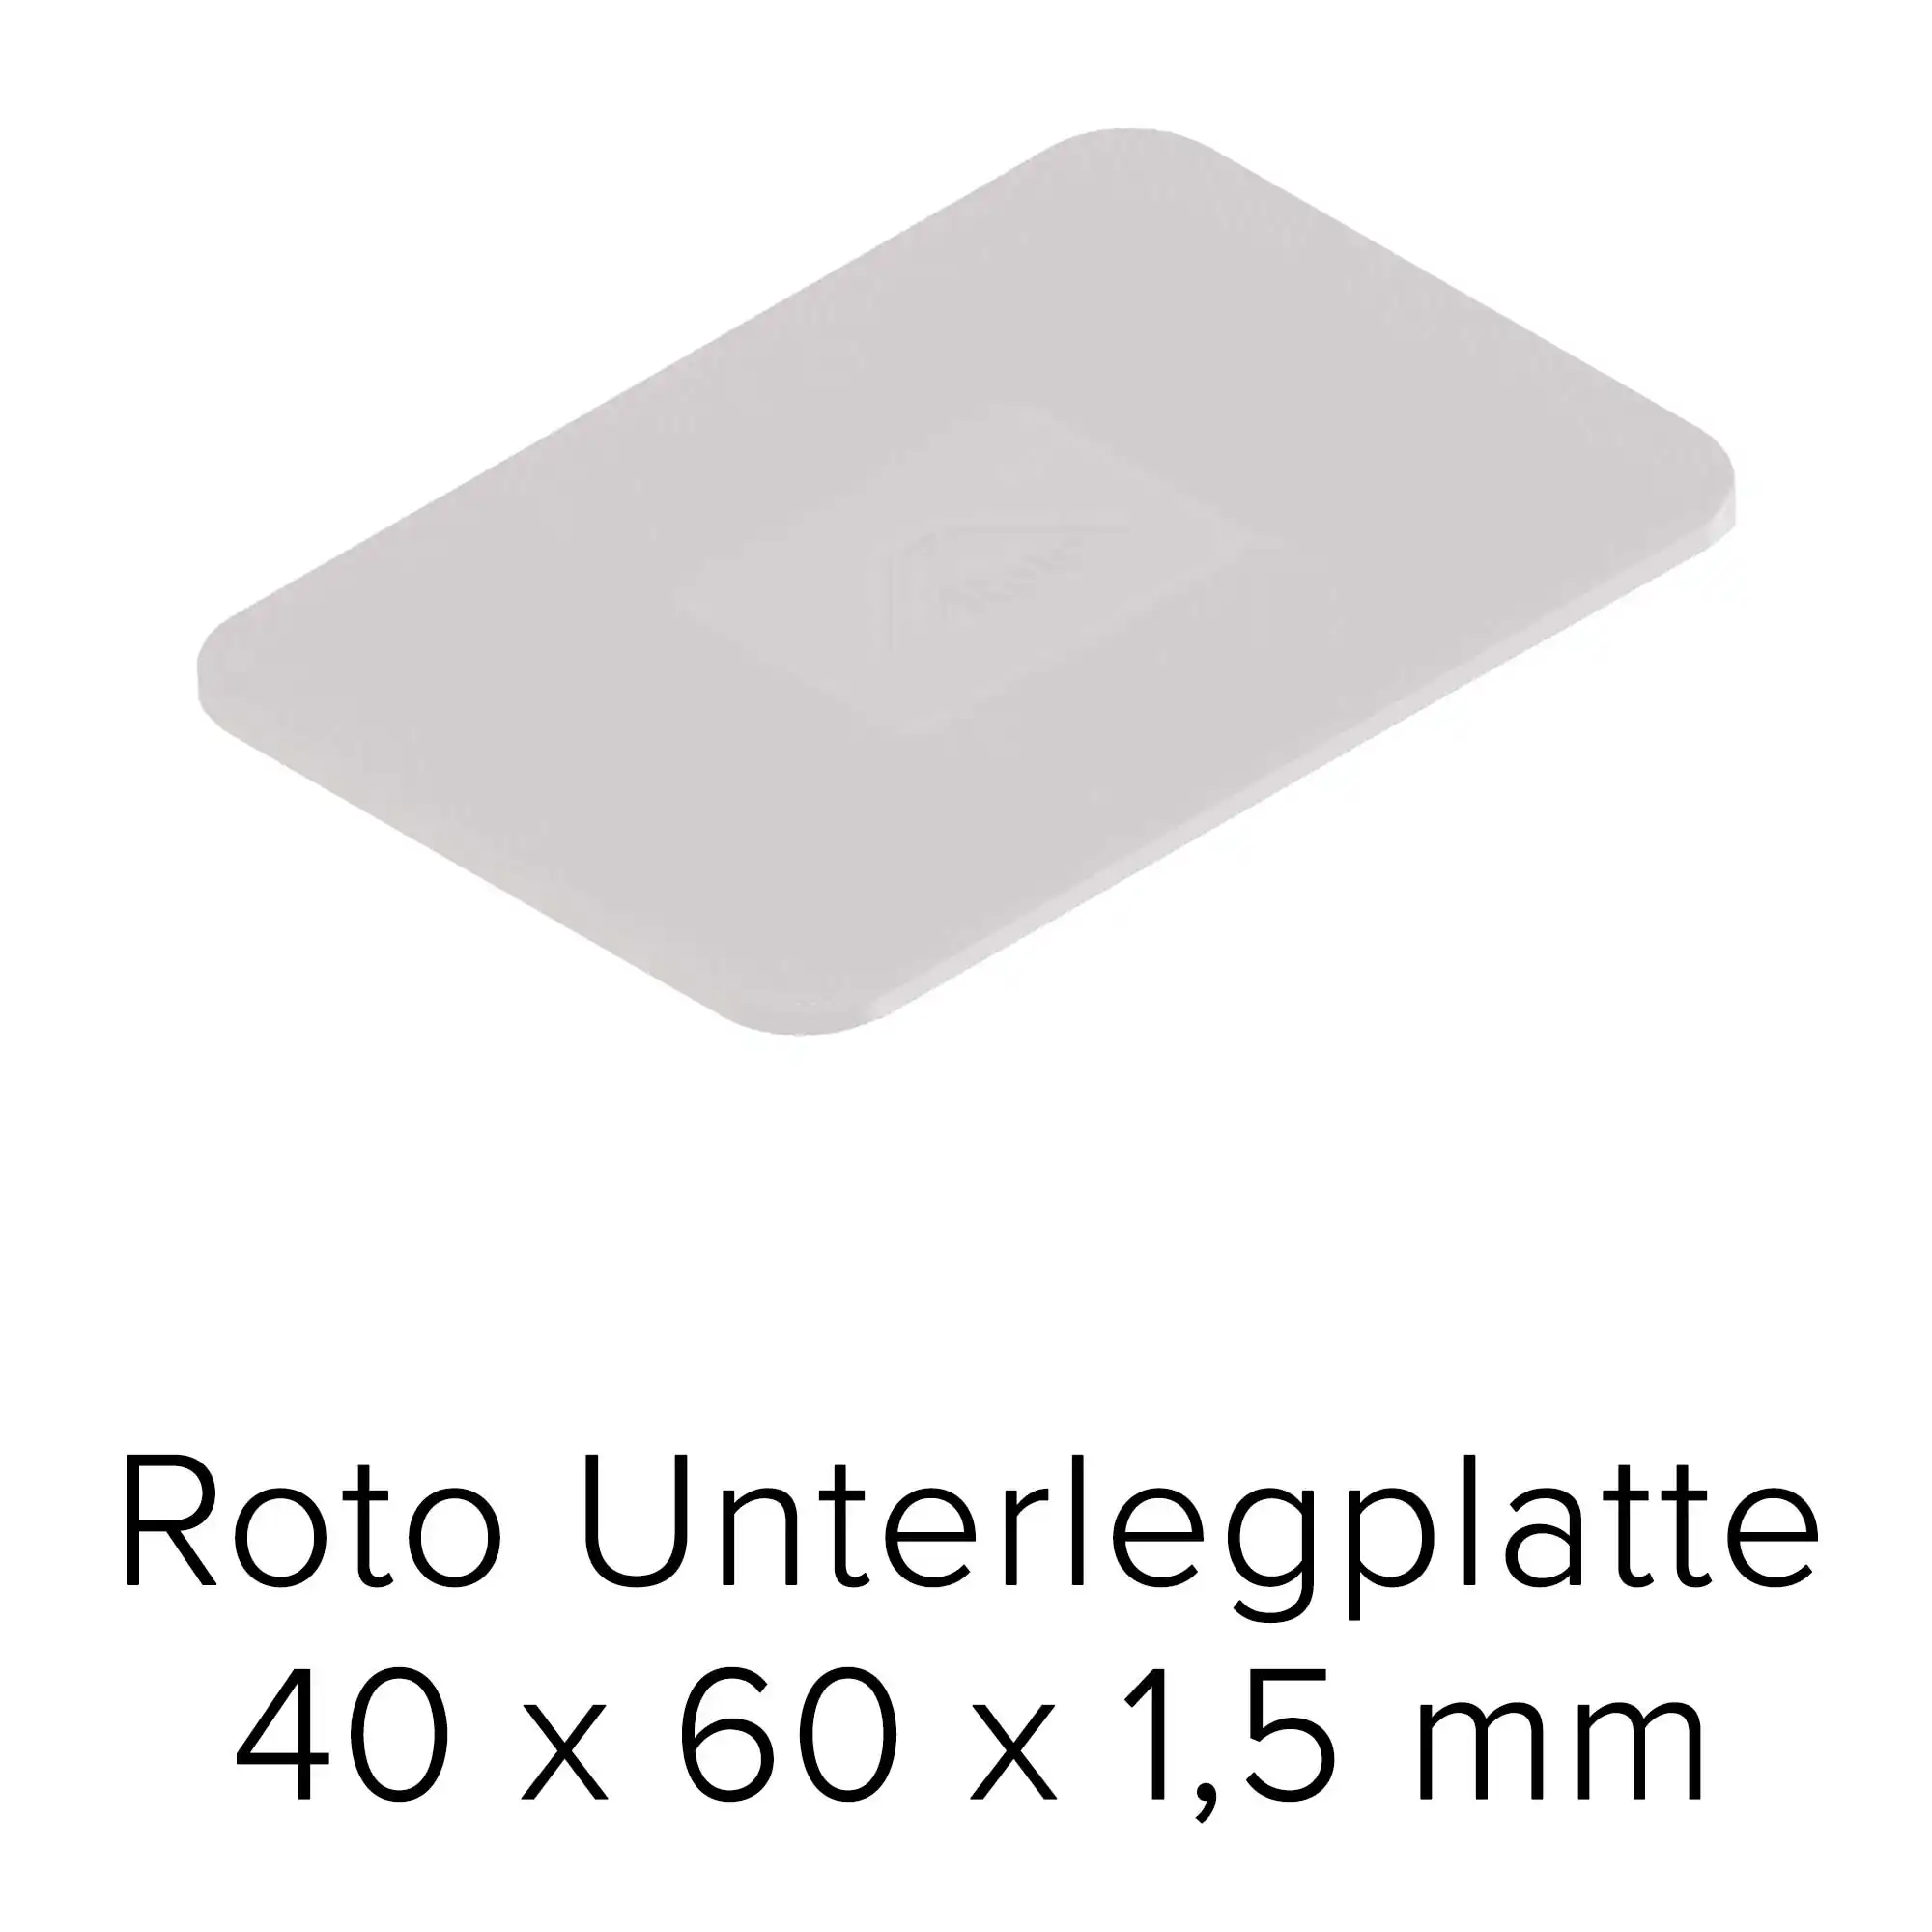 Roto Unterlegplatte 40 x 60 x 1,5 mm